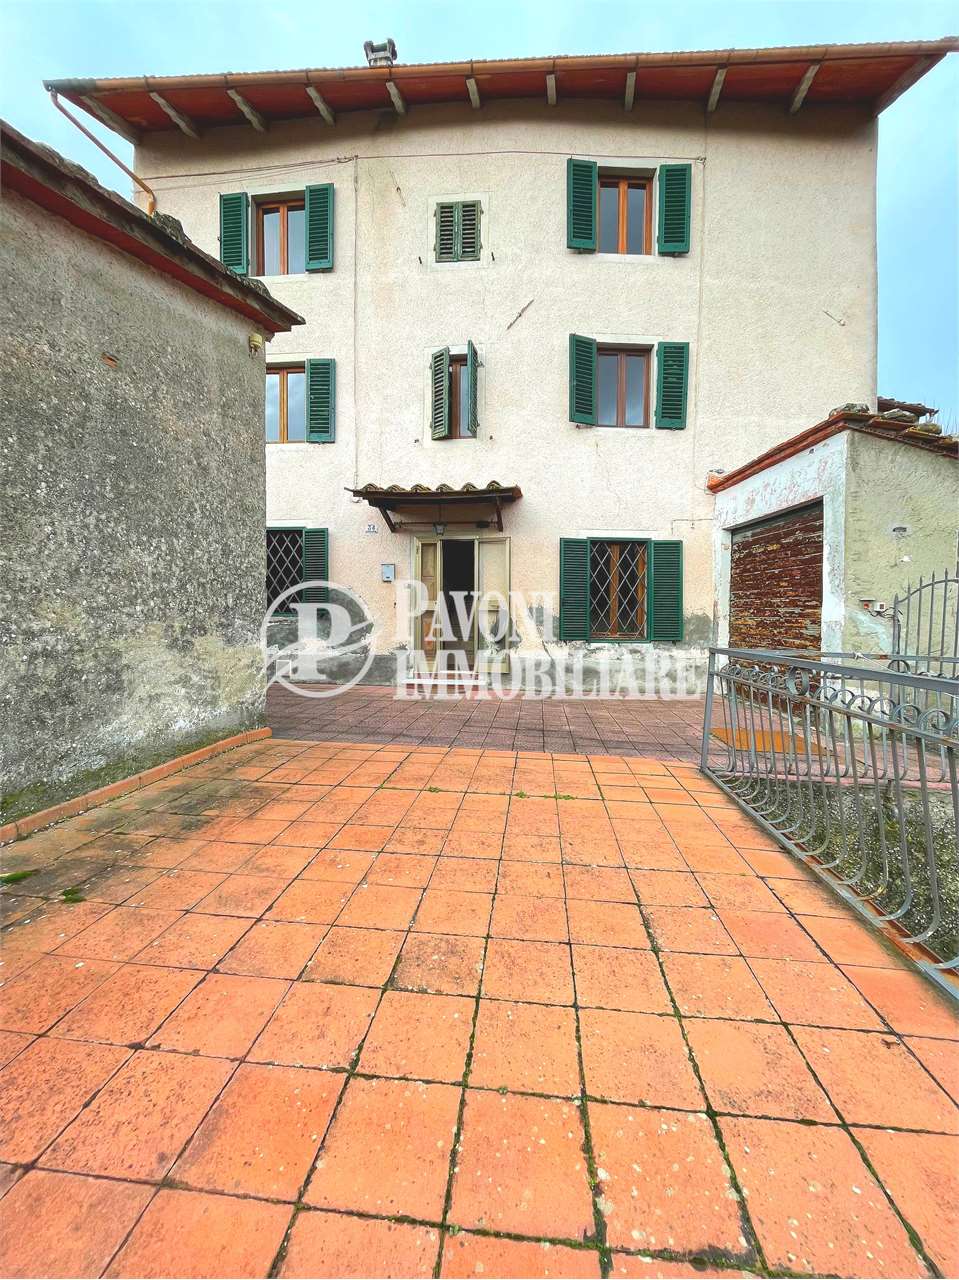 Villa a Schiera in vendita a Pistoia, 6 locali, prezzo € 115.000 | PortaleAgenzieImmobiliari.it